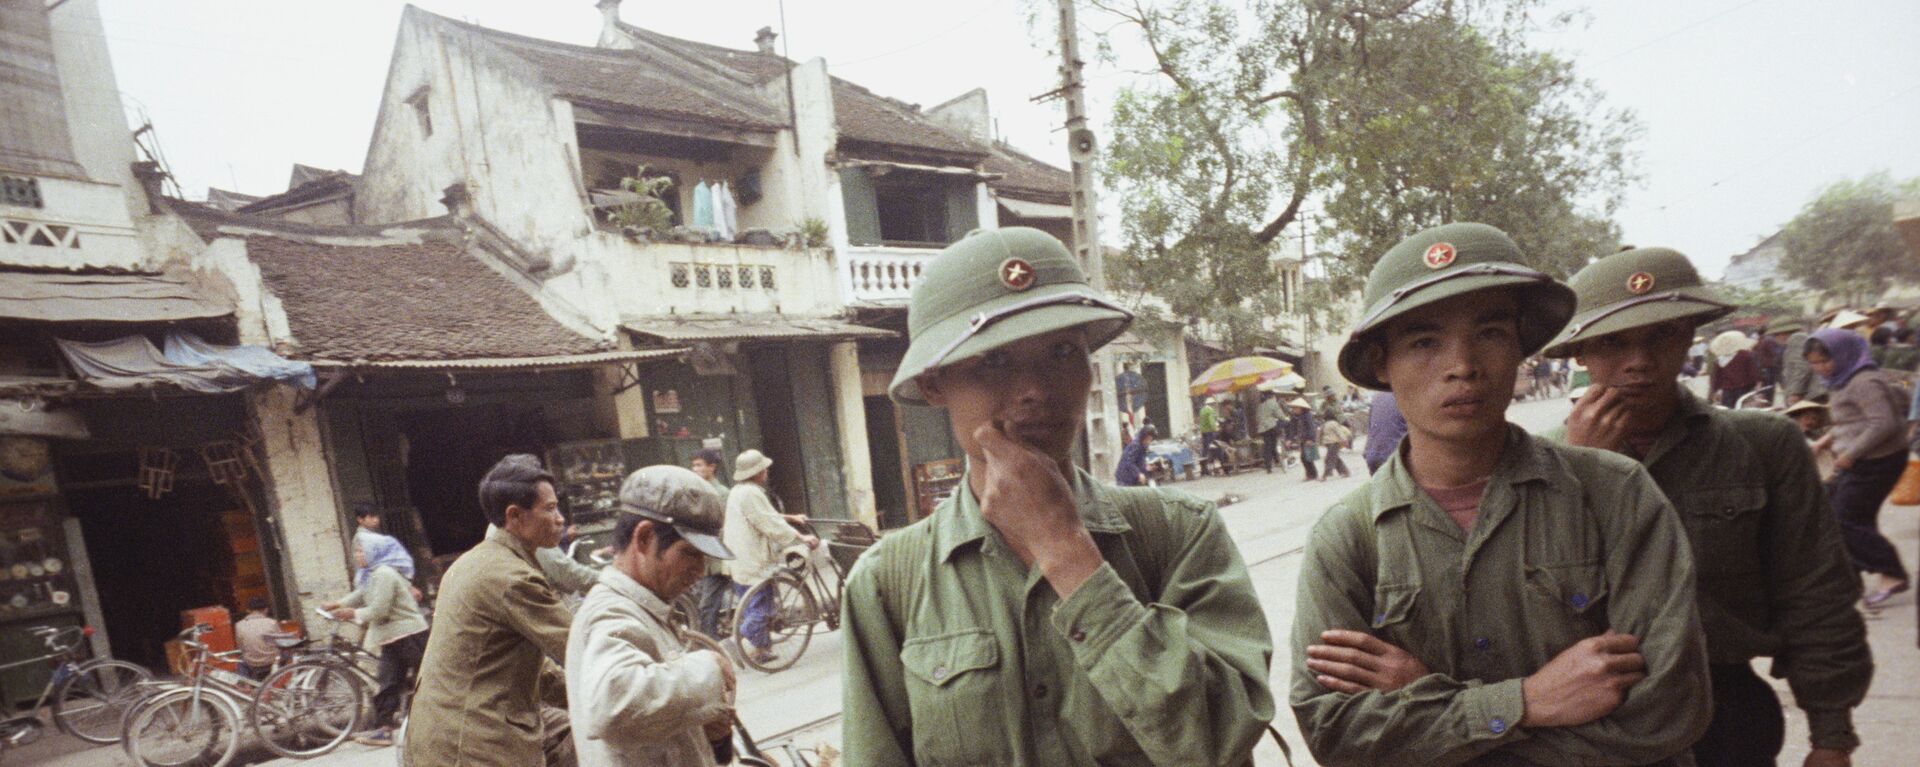 Cuộc xung đột Trung-Việt năm 1979 - Sputnik Việt Nam, 1920, 11.02.2019